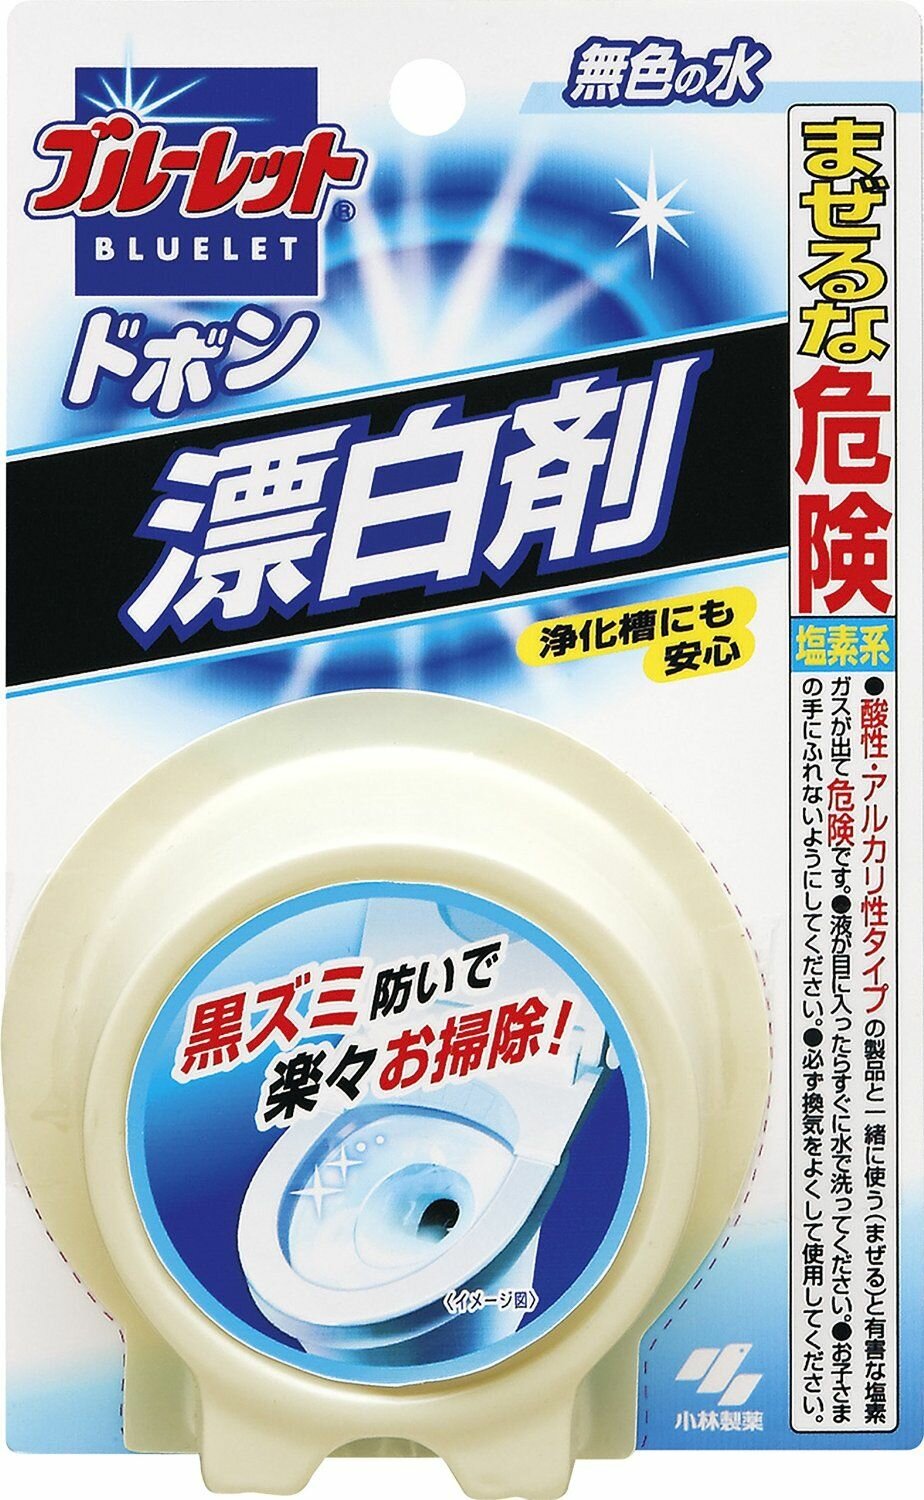 Oчищающая и дезодорирующая таблетка для бачка унитаза Kobayashi c отбеливающим эффектом